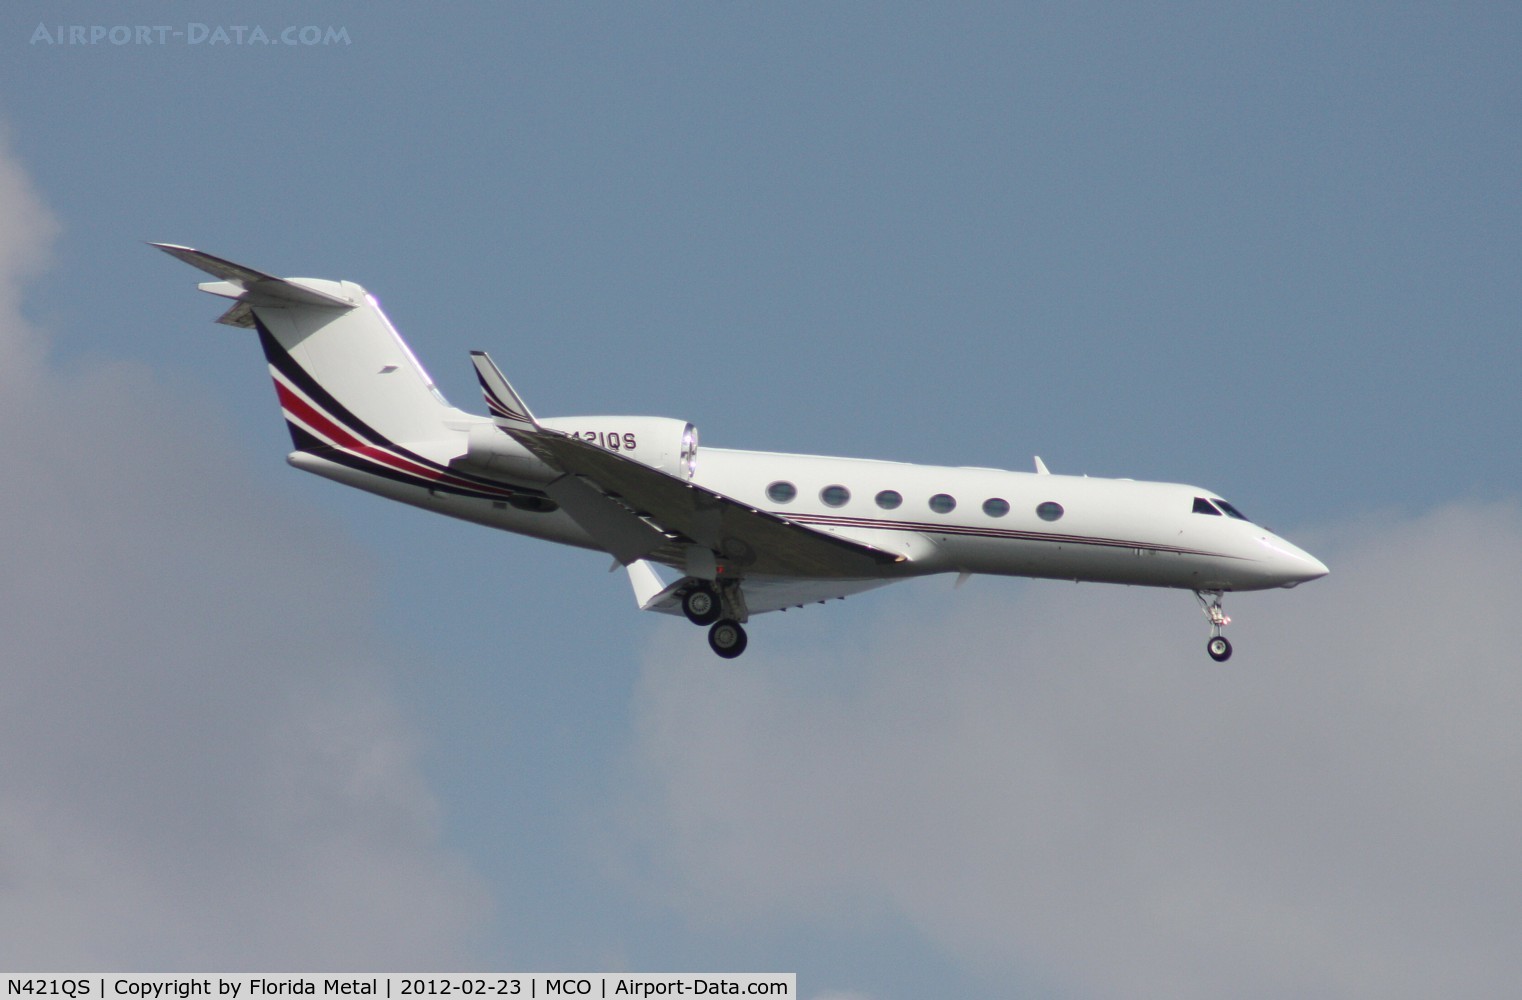 N421QS, 2008 Gulfstream Aerospace GIV-X (G450) C/N 4114, Net Jets G450